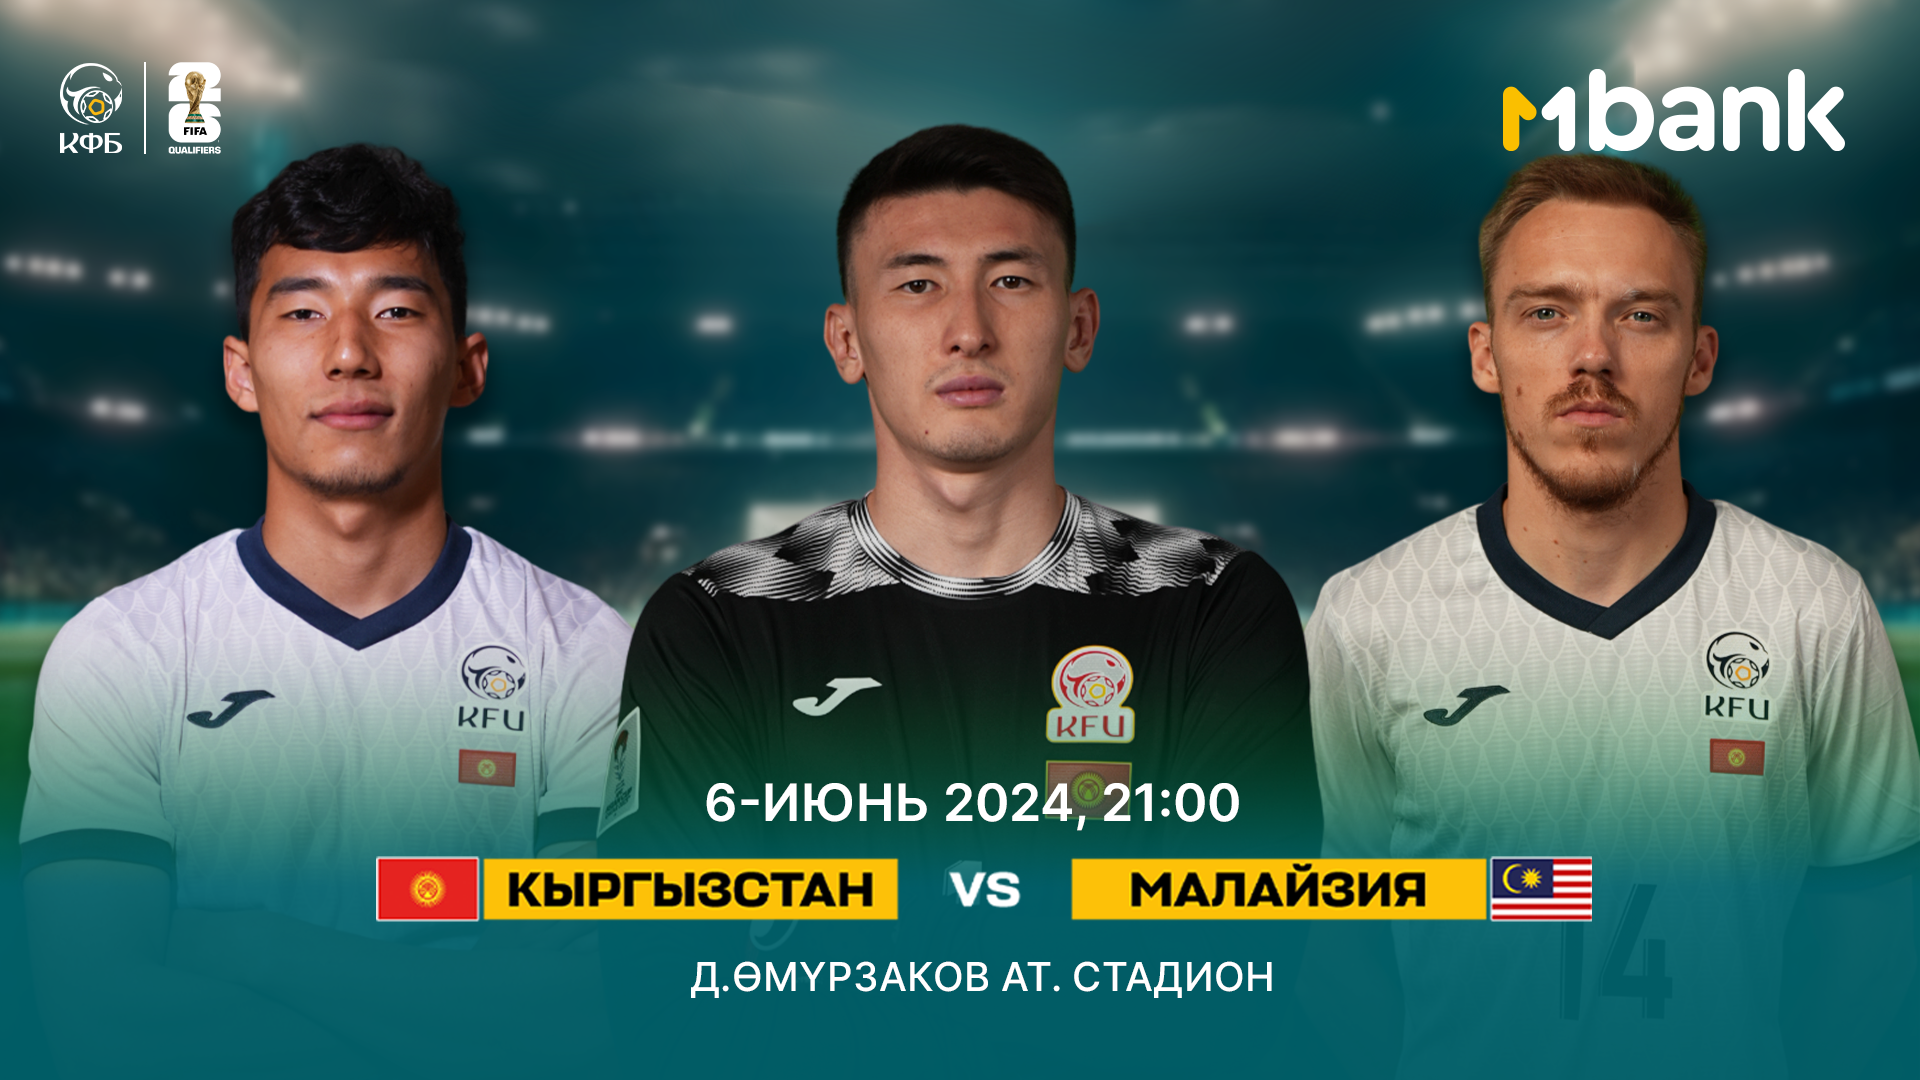 MBANK и КФС приглашают кыргызстанцев поддержать Национальную сборную по футболу